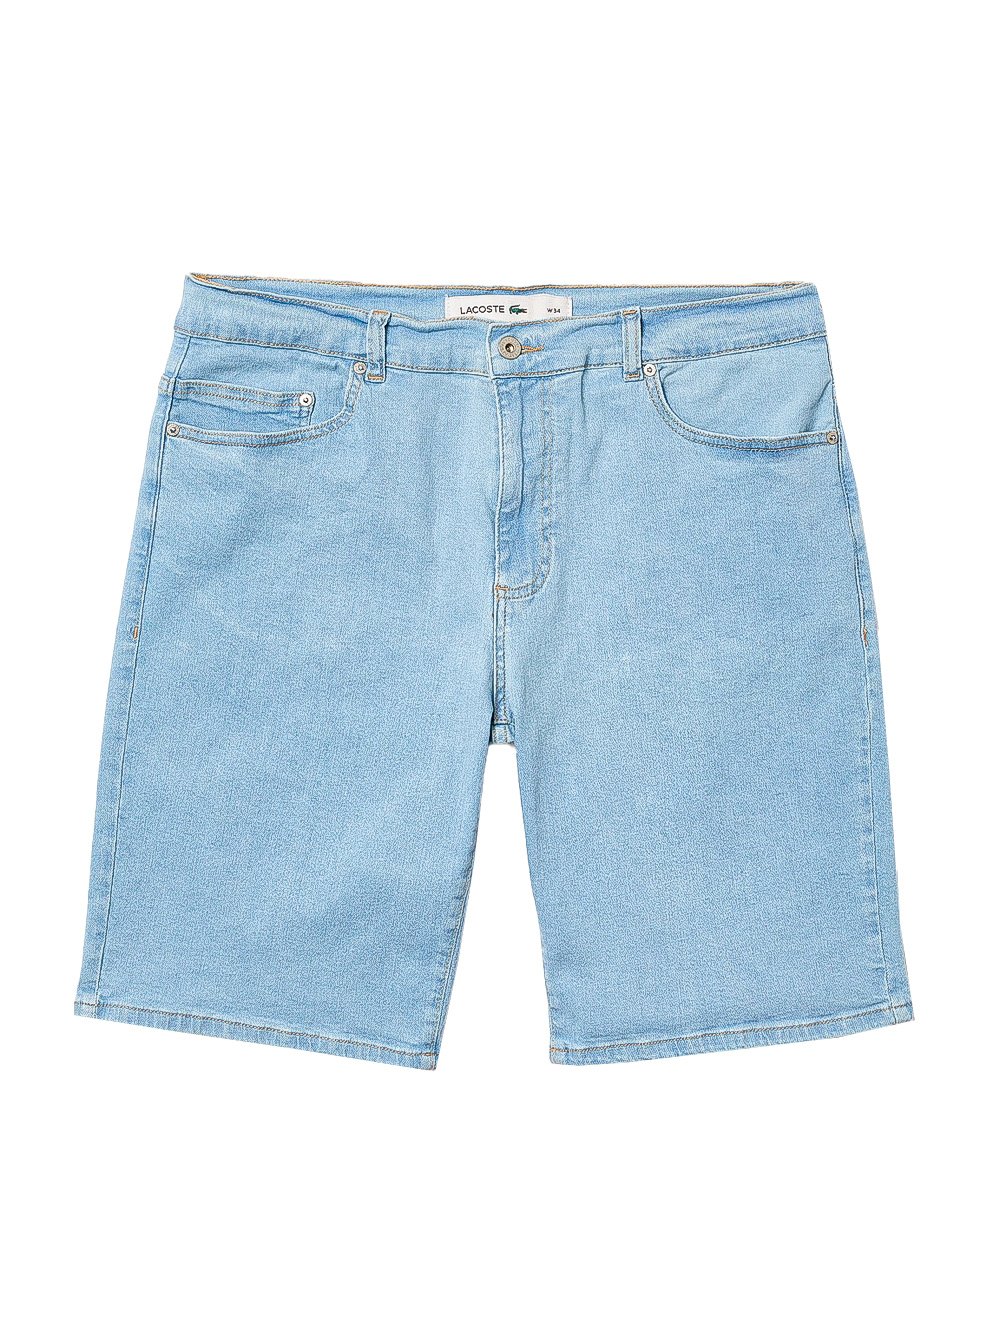 Bermuda Lacoste Jeans Masculina Slim Stretch Azul Claro